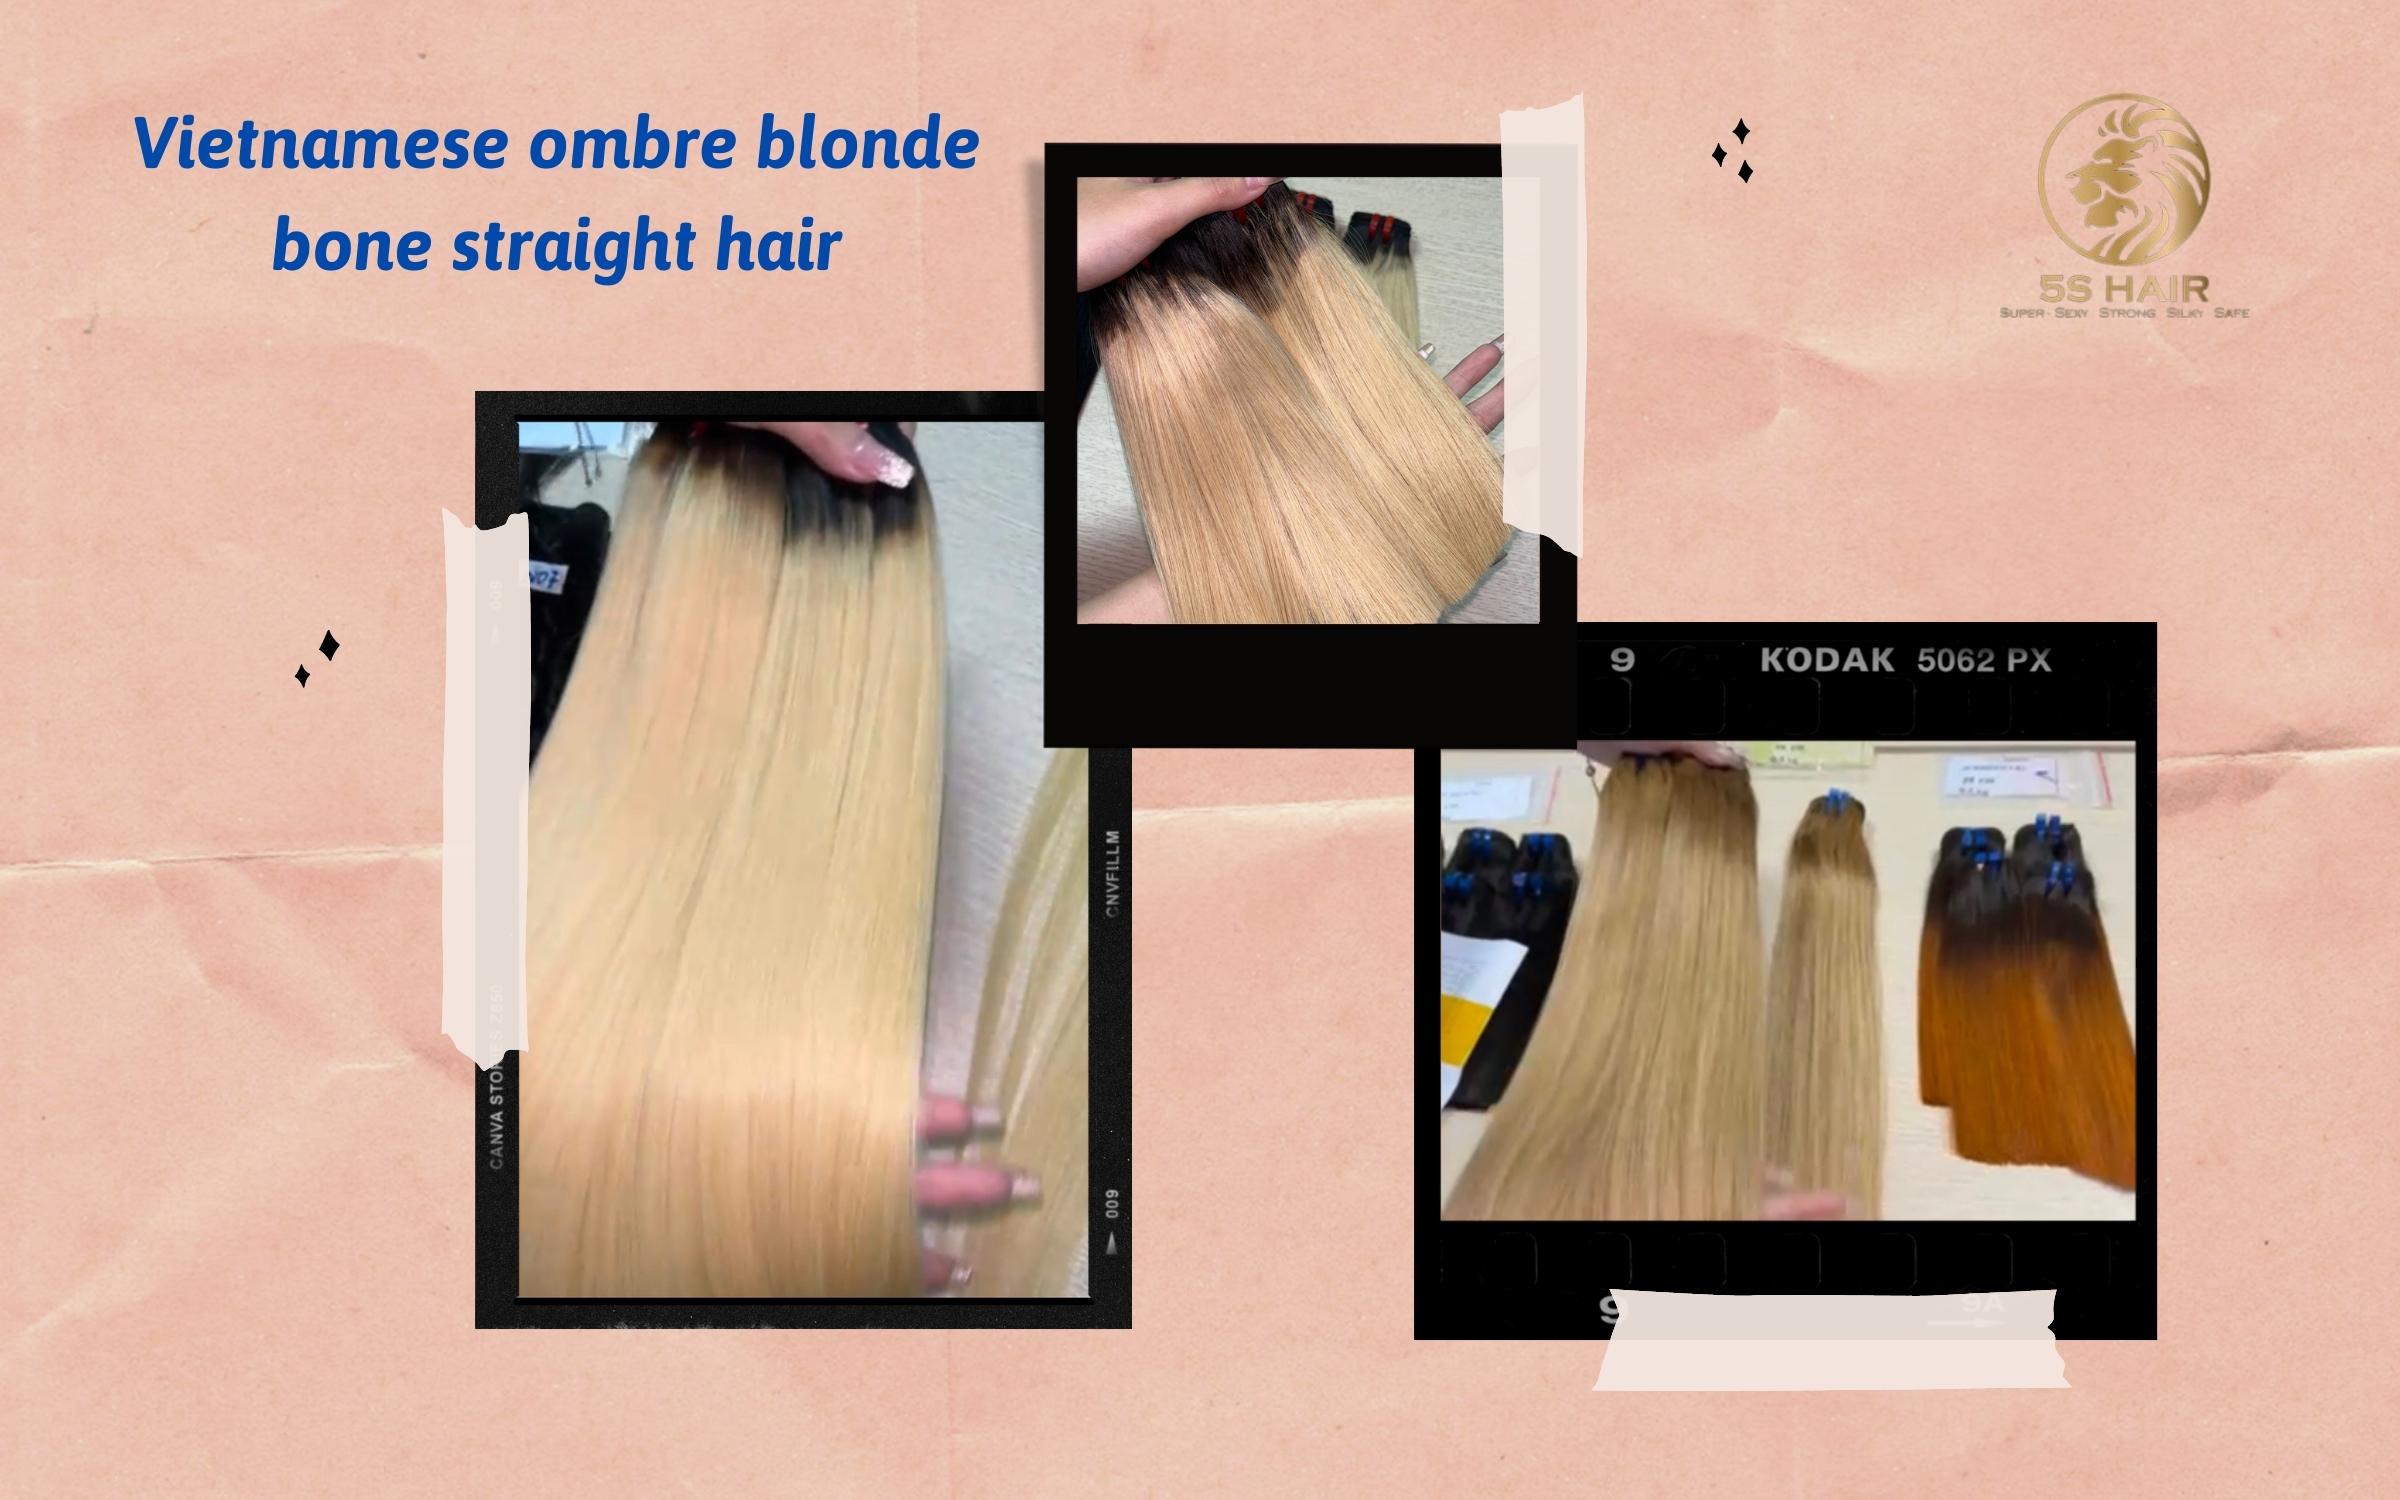 vietnamse-ombre-blonde-bone-straight-hair3